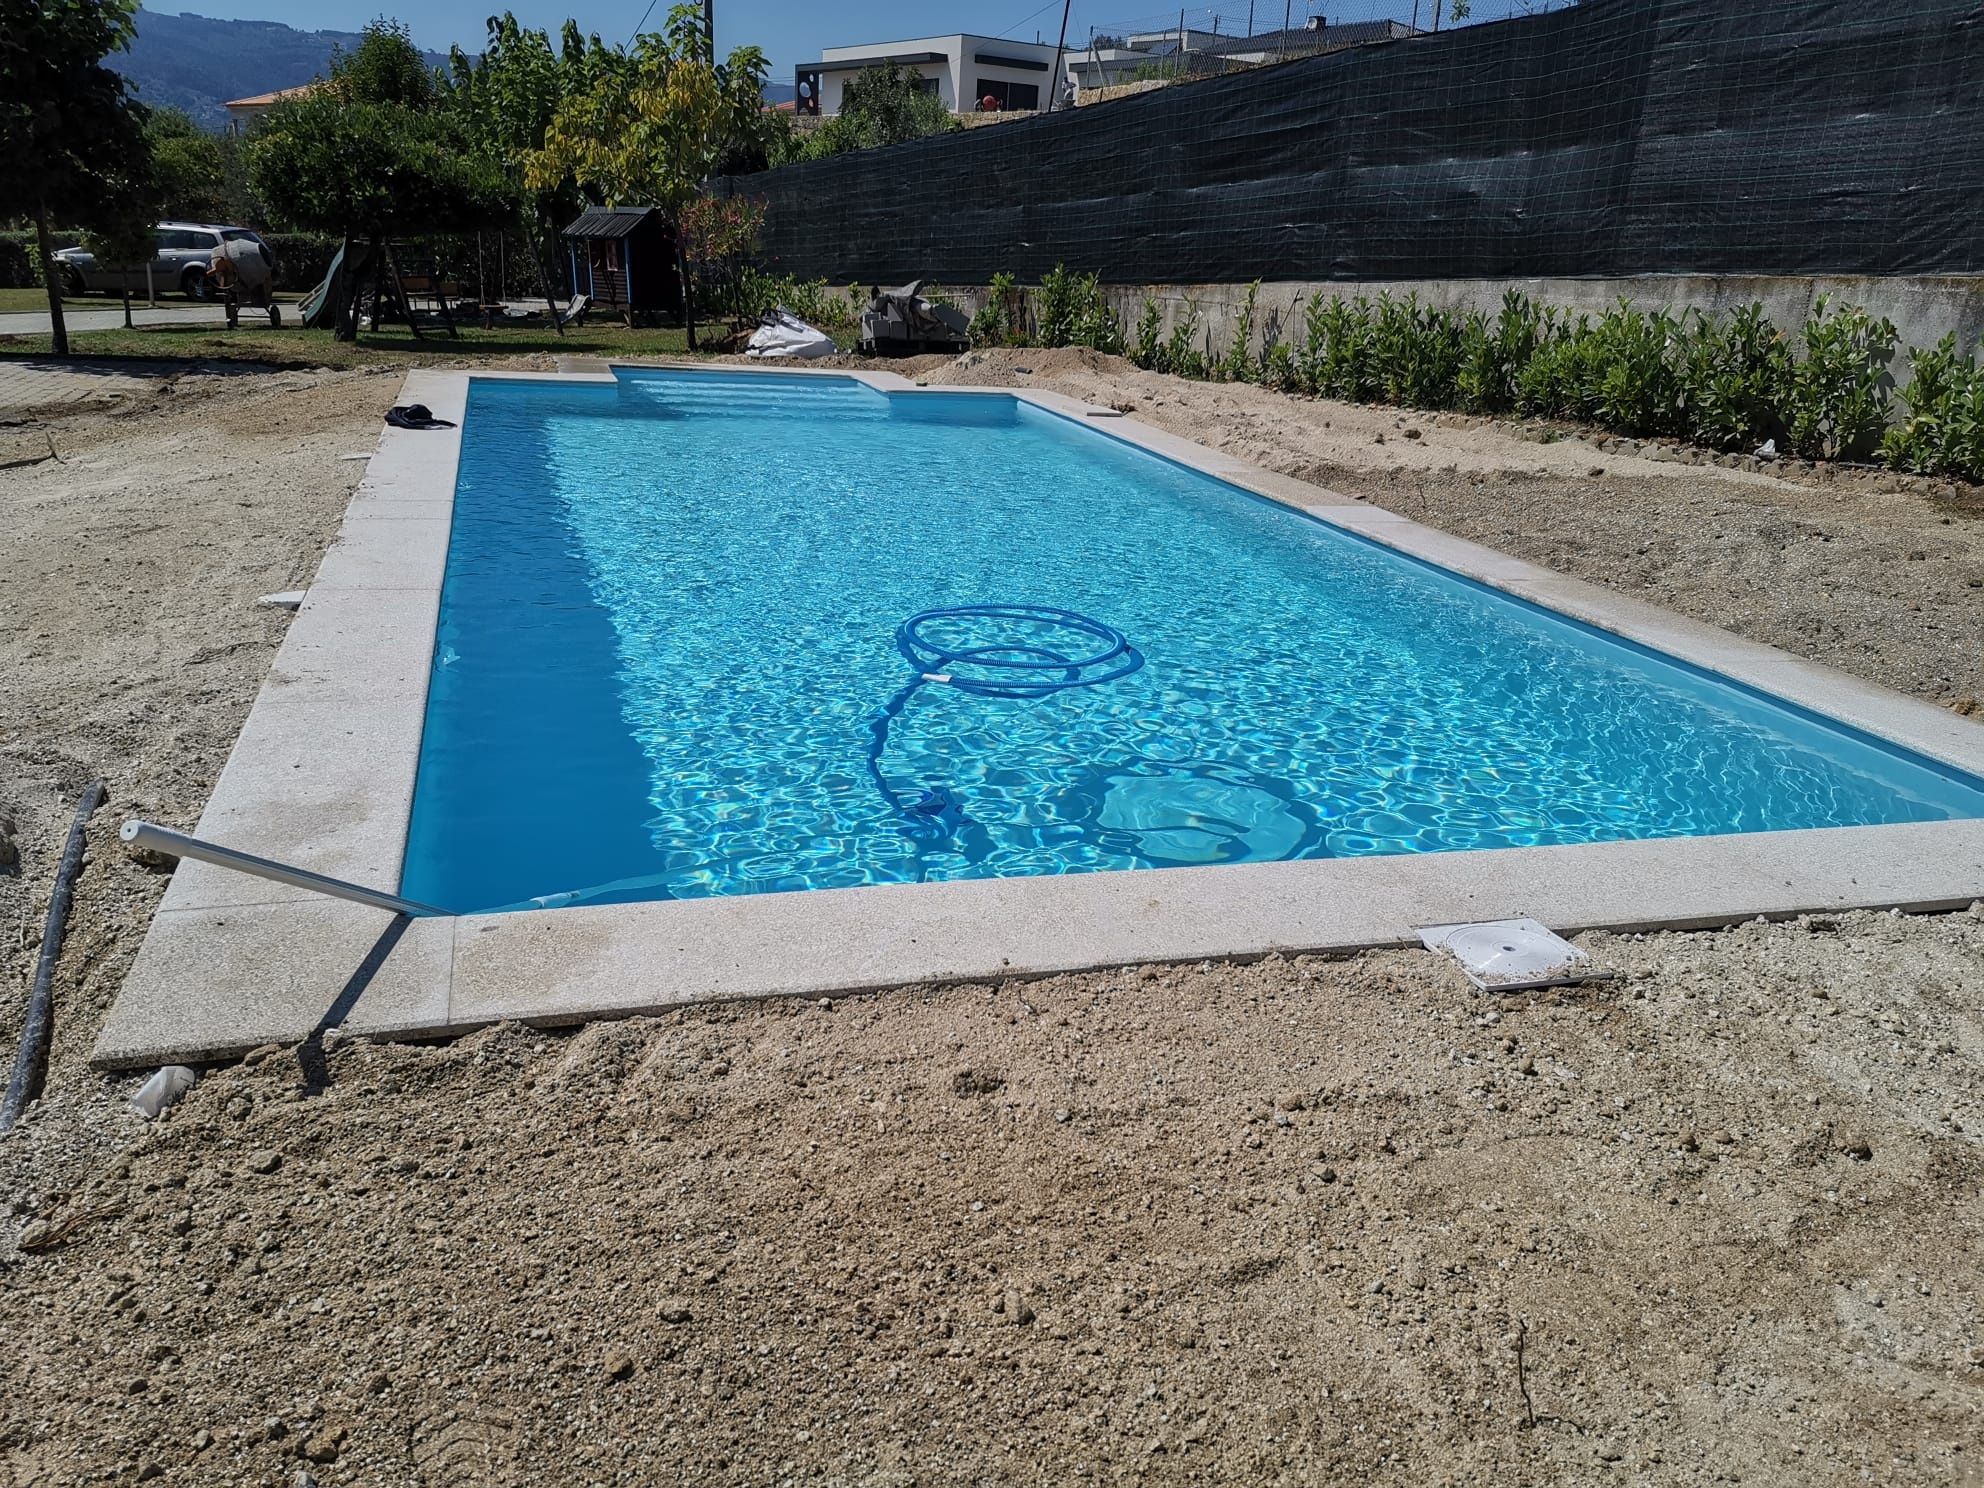 Construção de piscinas em bloco ou fibra